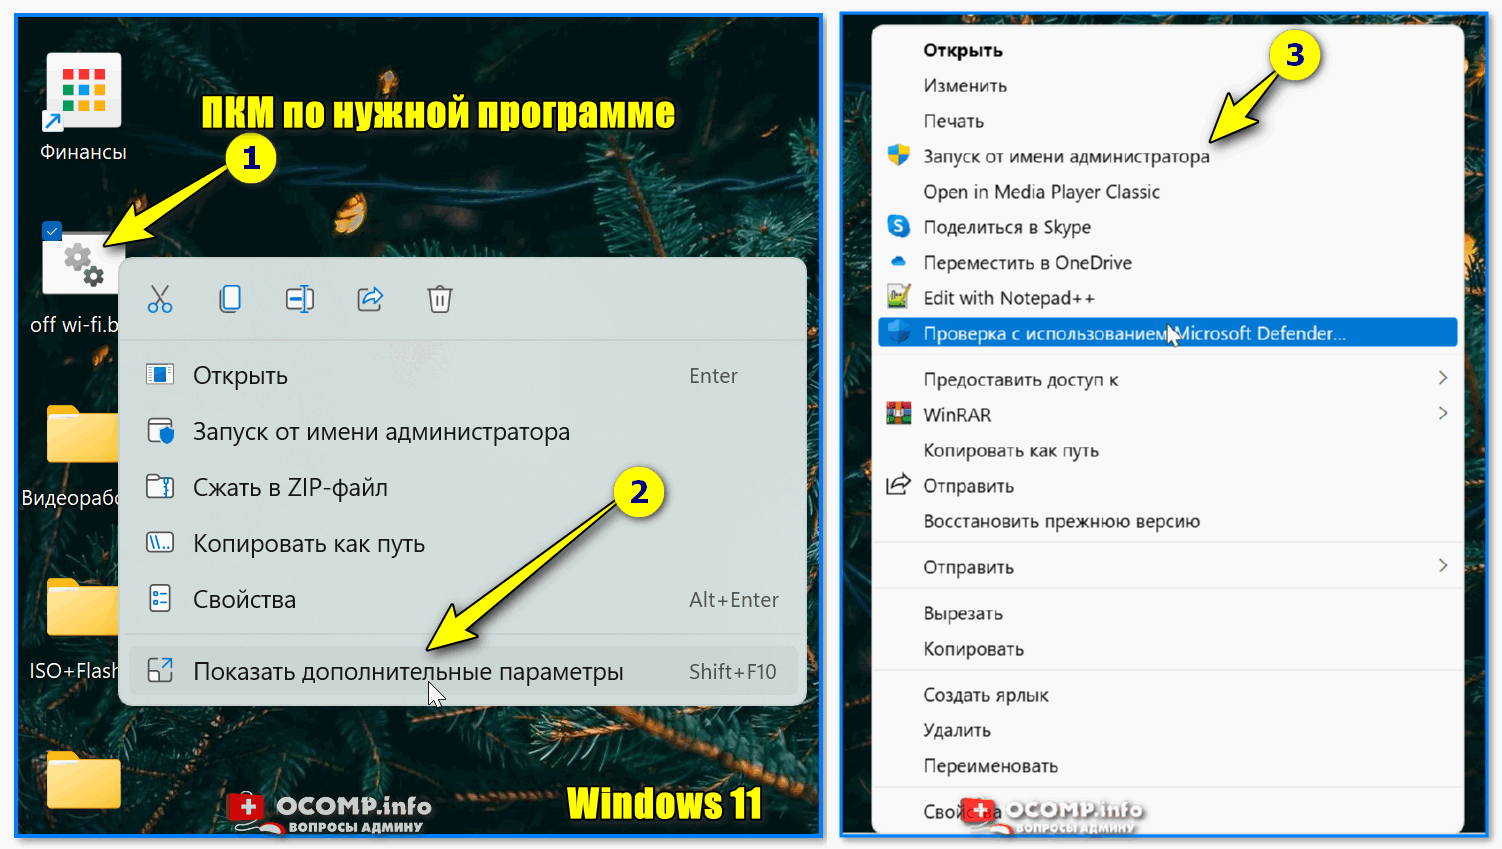 Запуск от имени администратора windows 10: варианты